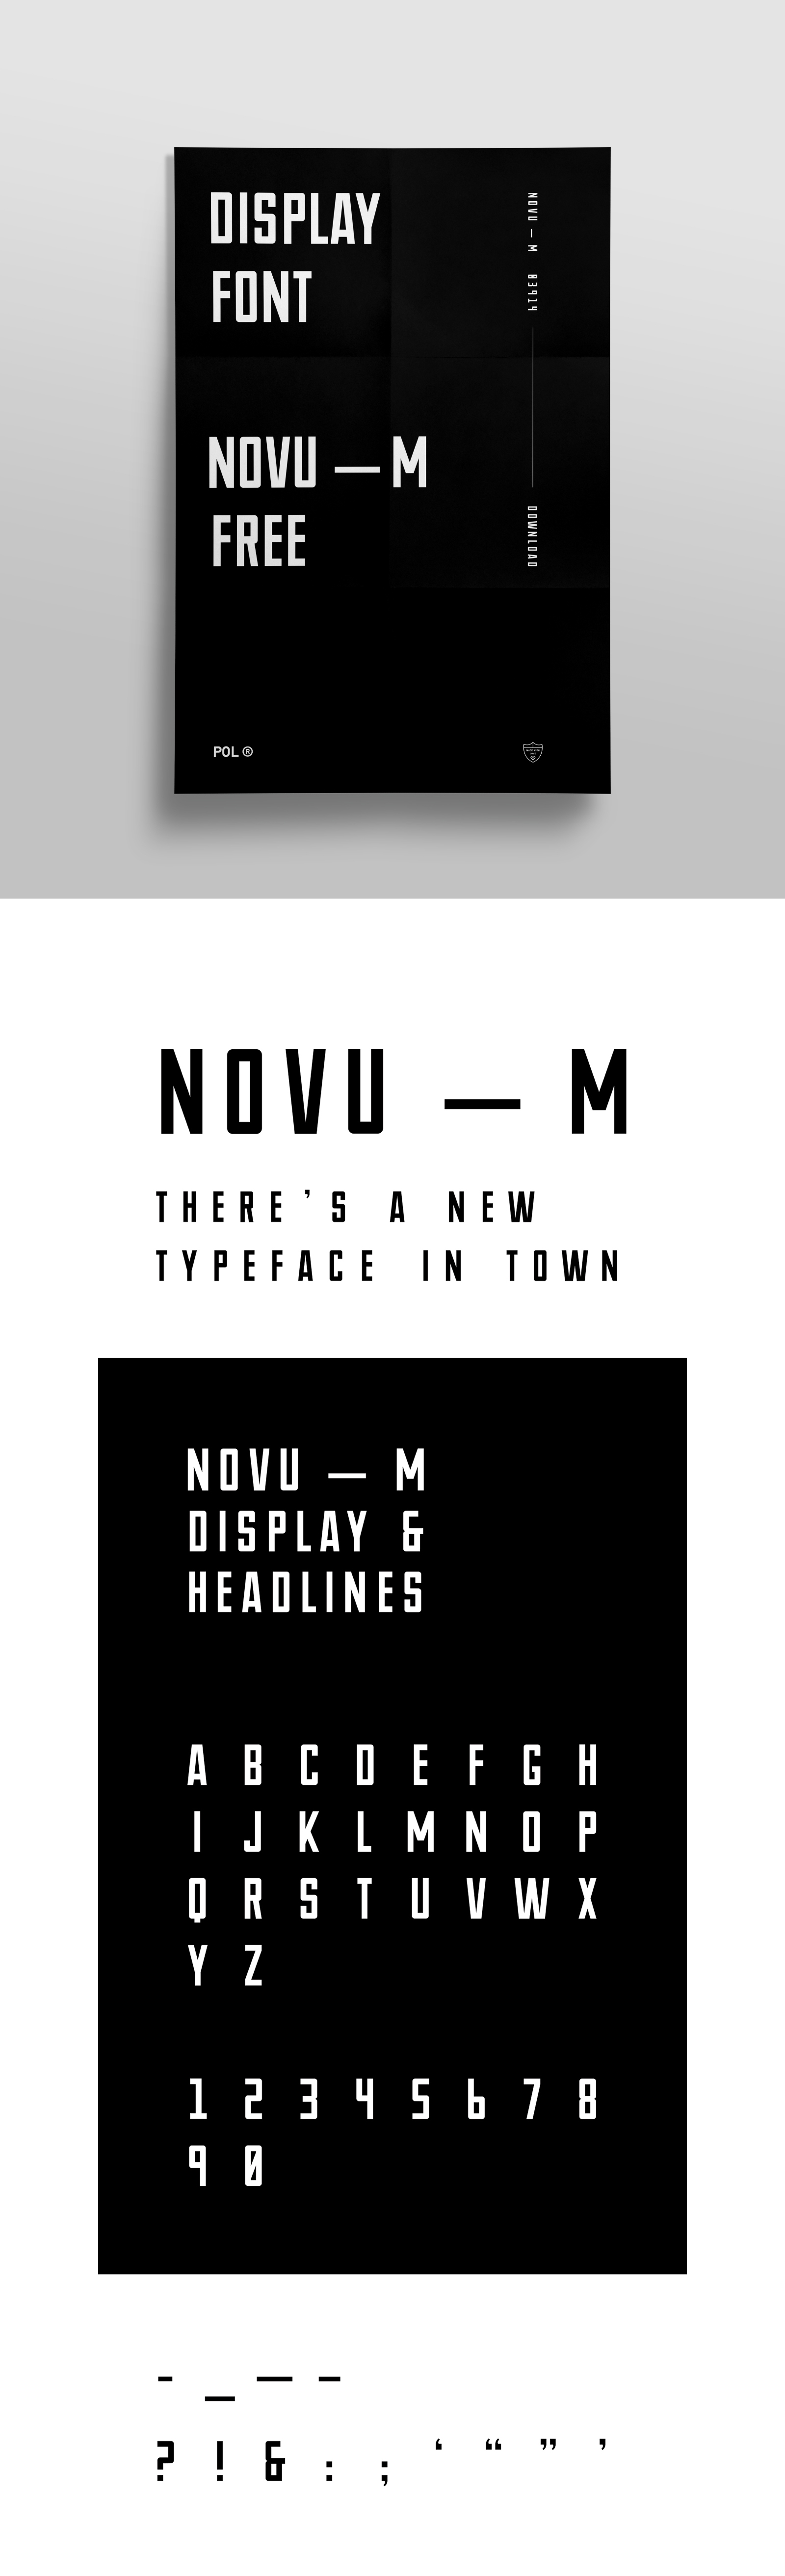 NOVU-M Free Font